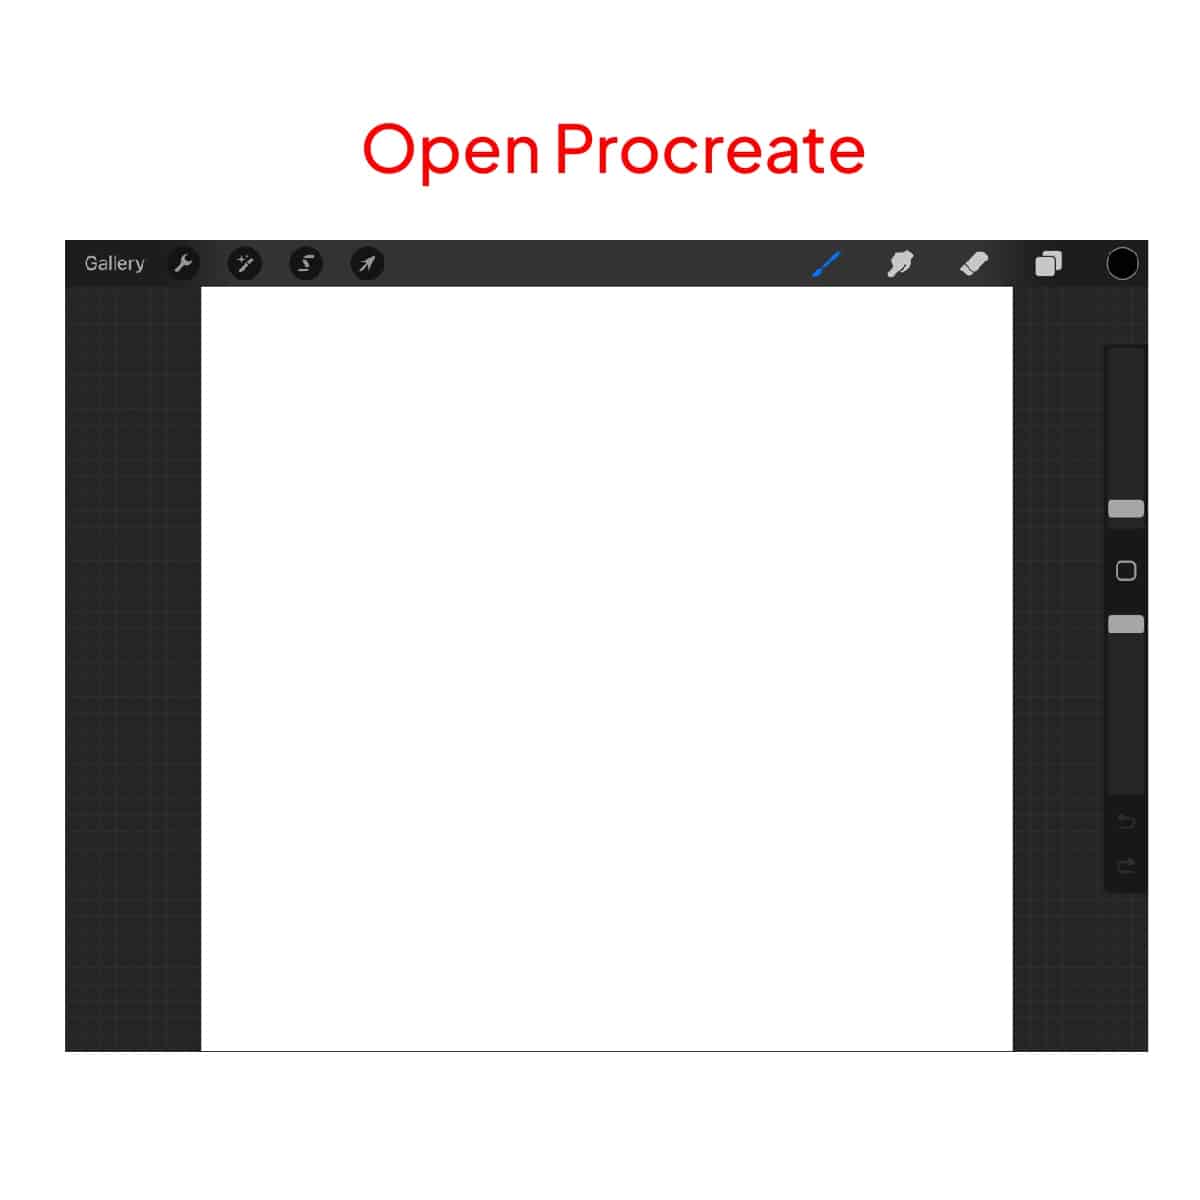 Open Procreate